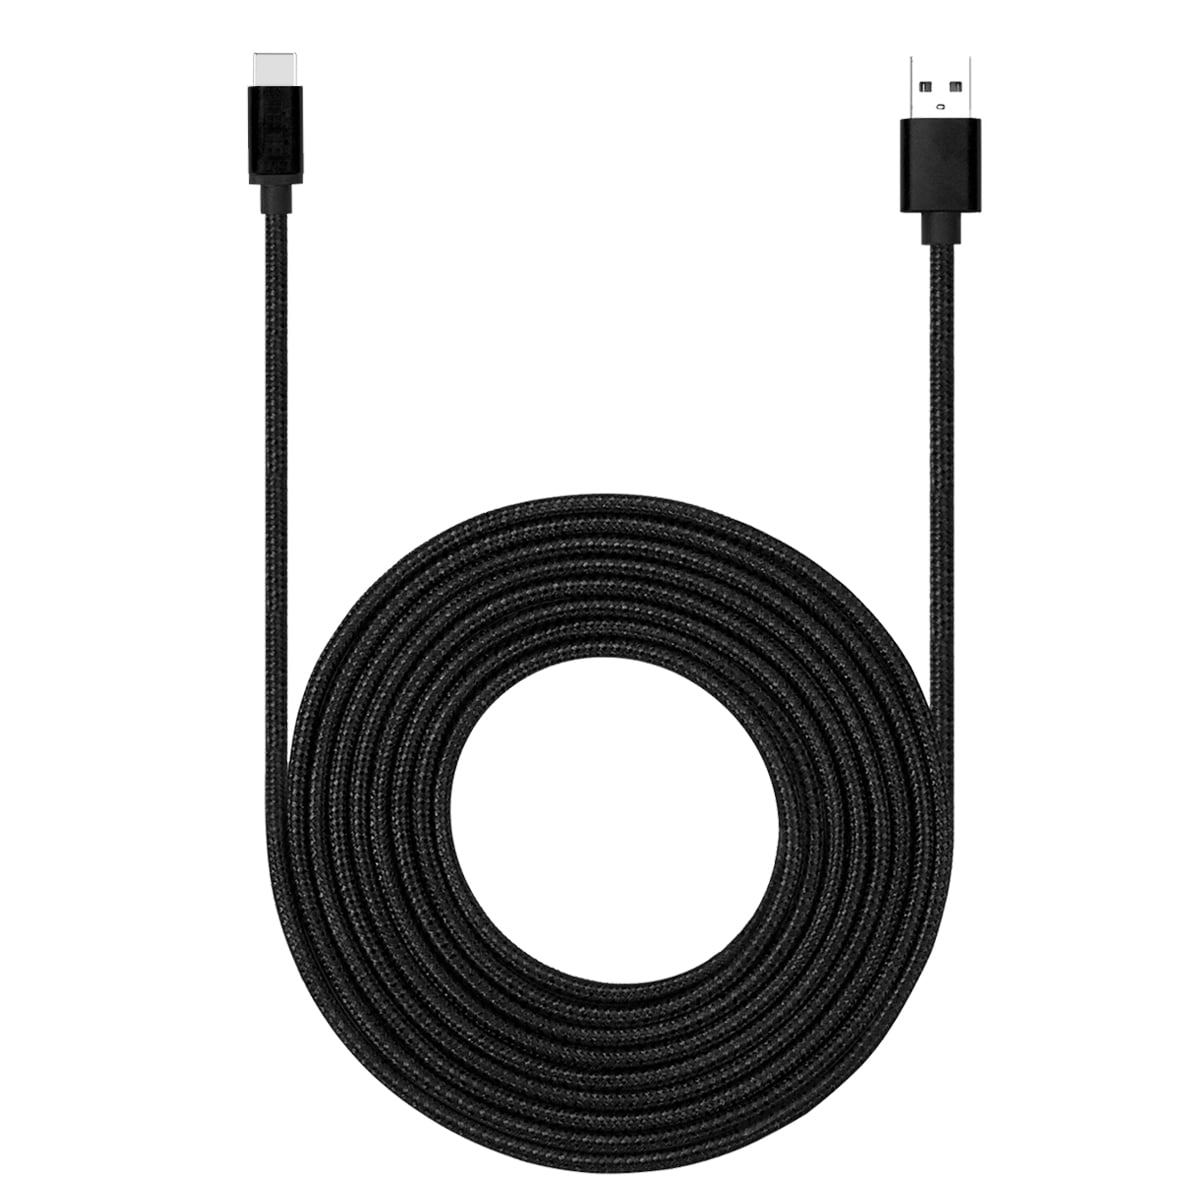 CJZH Cargador Rápido con Cable USB C para Samsung Galaxy S20 FE/ S10/ A71/ S10/ S9/ S8/ A20e/ A21s/ A51/ A50/ A70/ A80/ A90 EPTA20, Blanco S10e